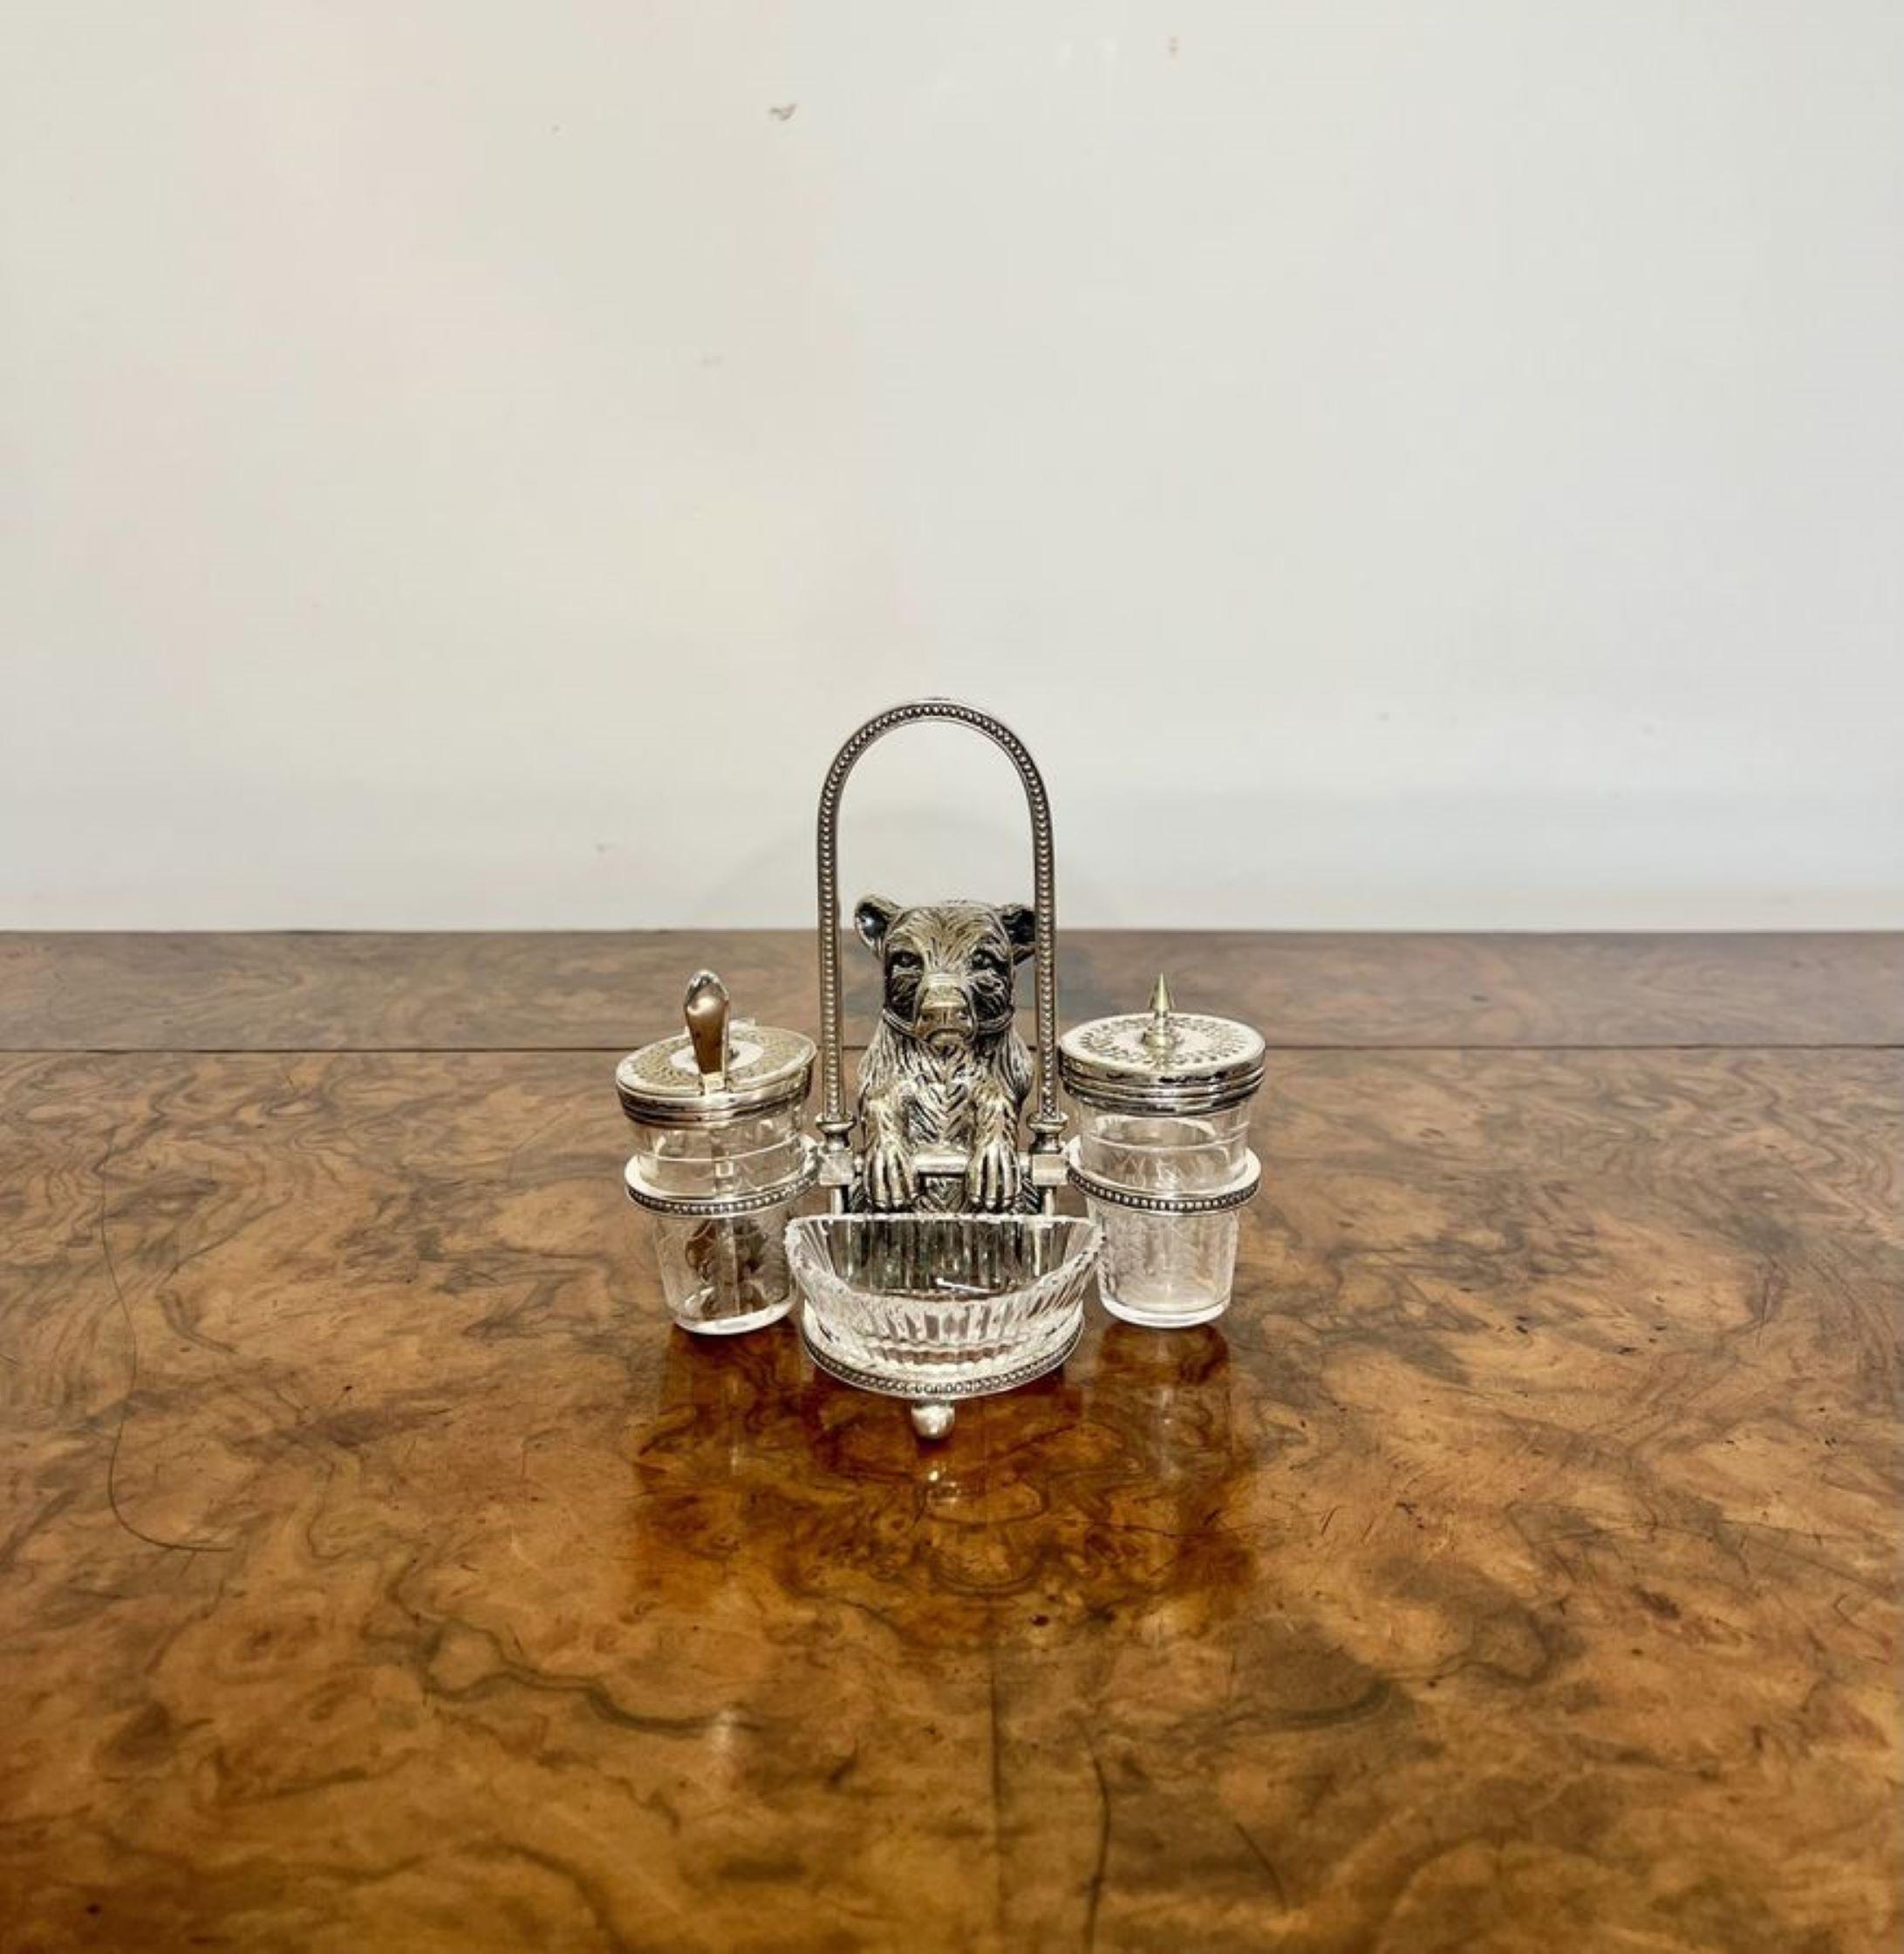 Magnifique burette de fantaisie en métal argenté de l'époque victorienne, avec un ours en métal argenté au centre, à côté d'un pot à moutarde et d'une cuillère en métal argenté et en verre gravé, et d'une poivrette en métal argenté et en verre gravé